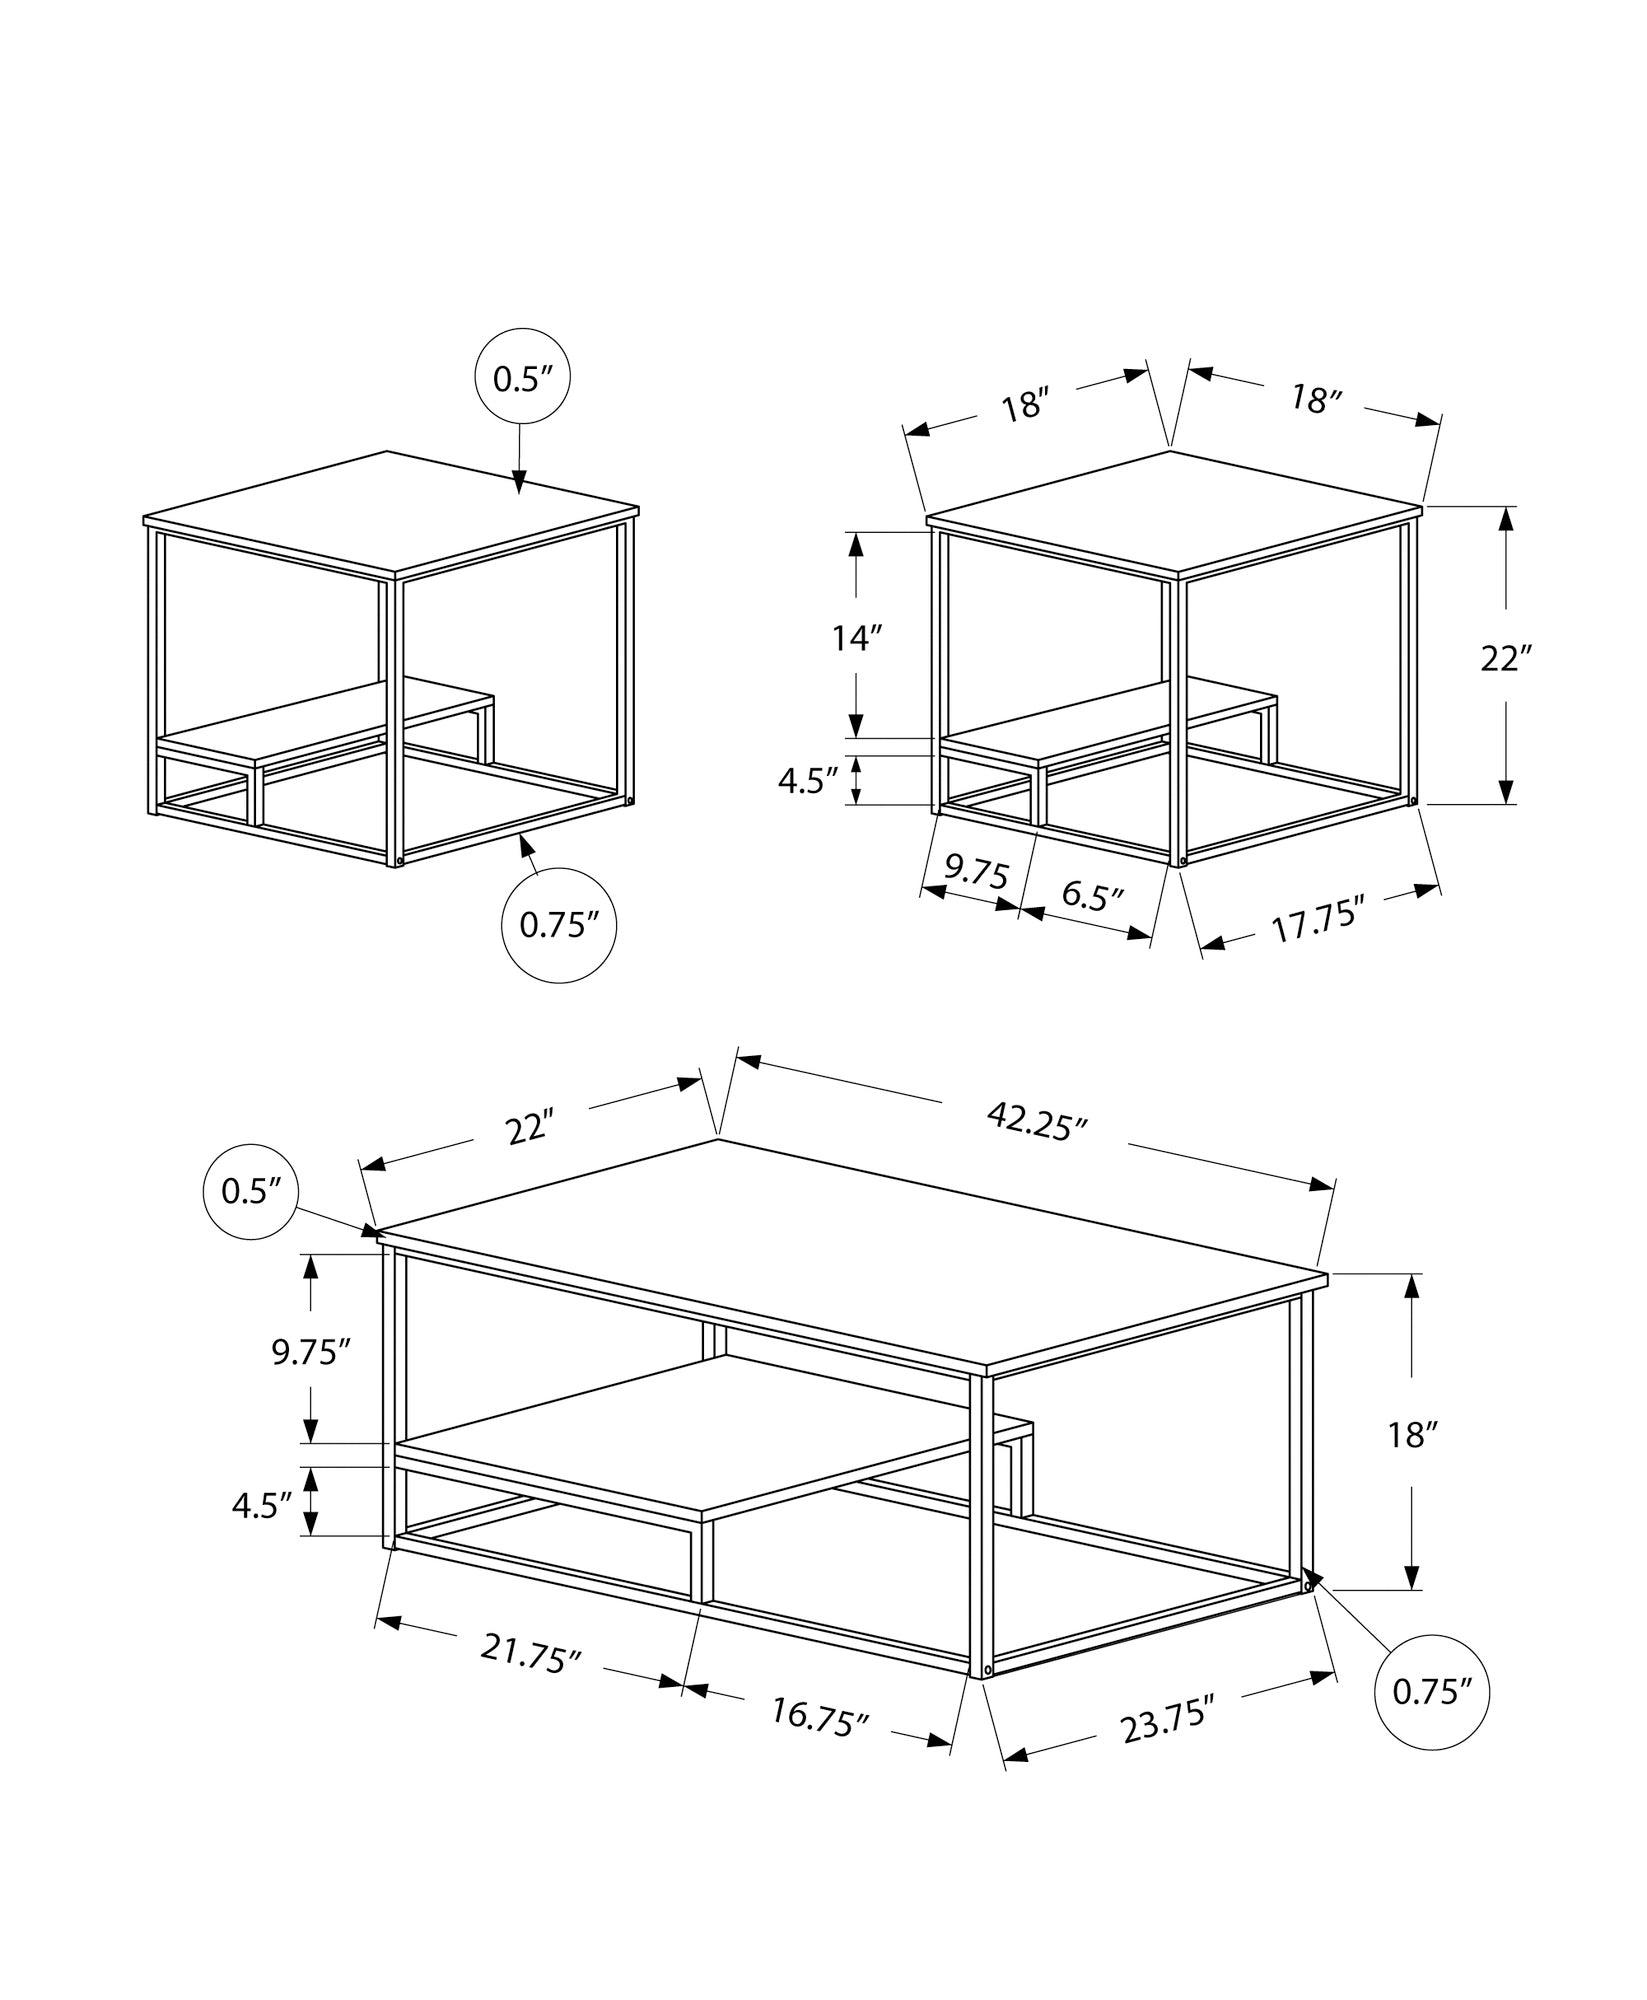 Table Set - 3Pcs Set / Dark Taupe / Black Metal